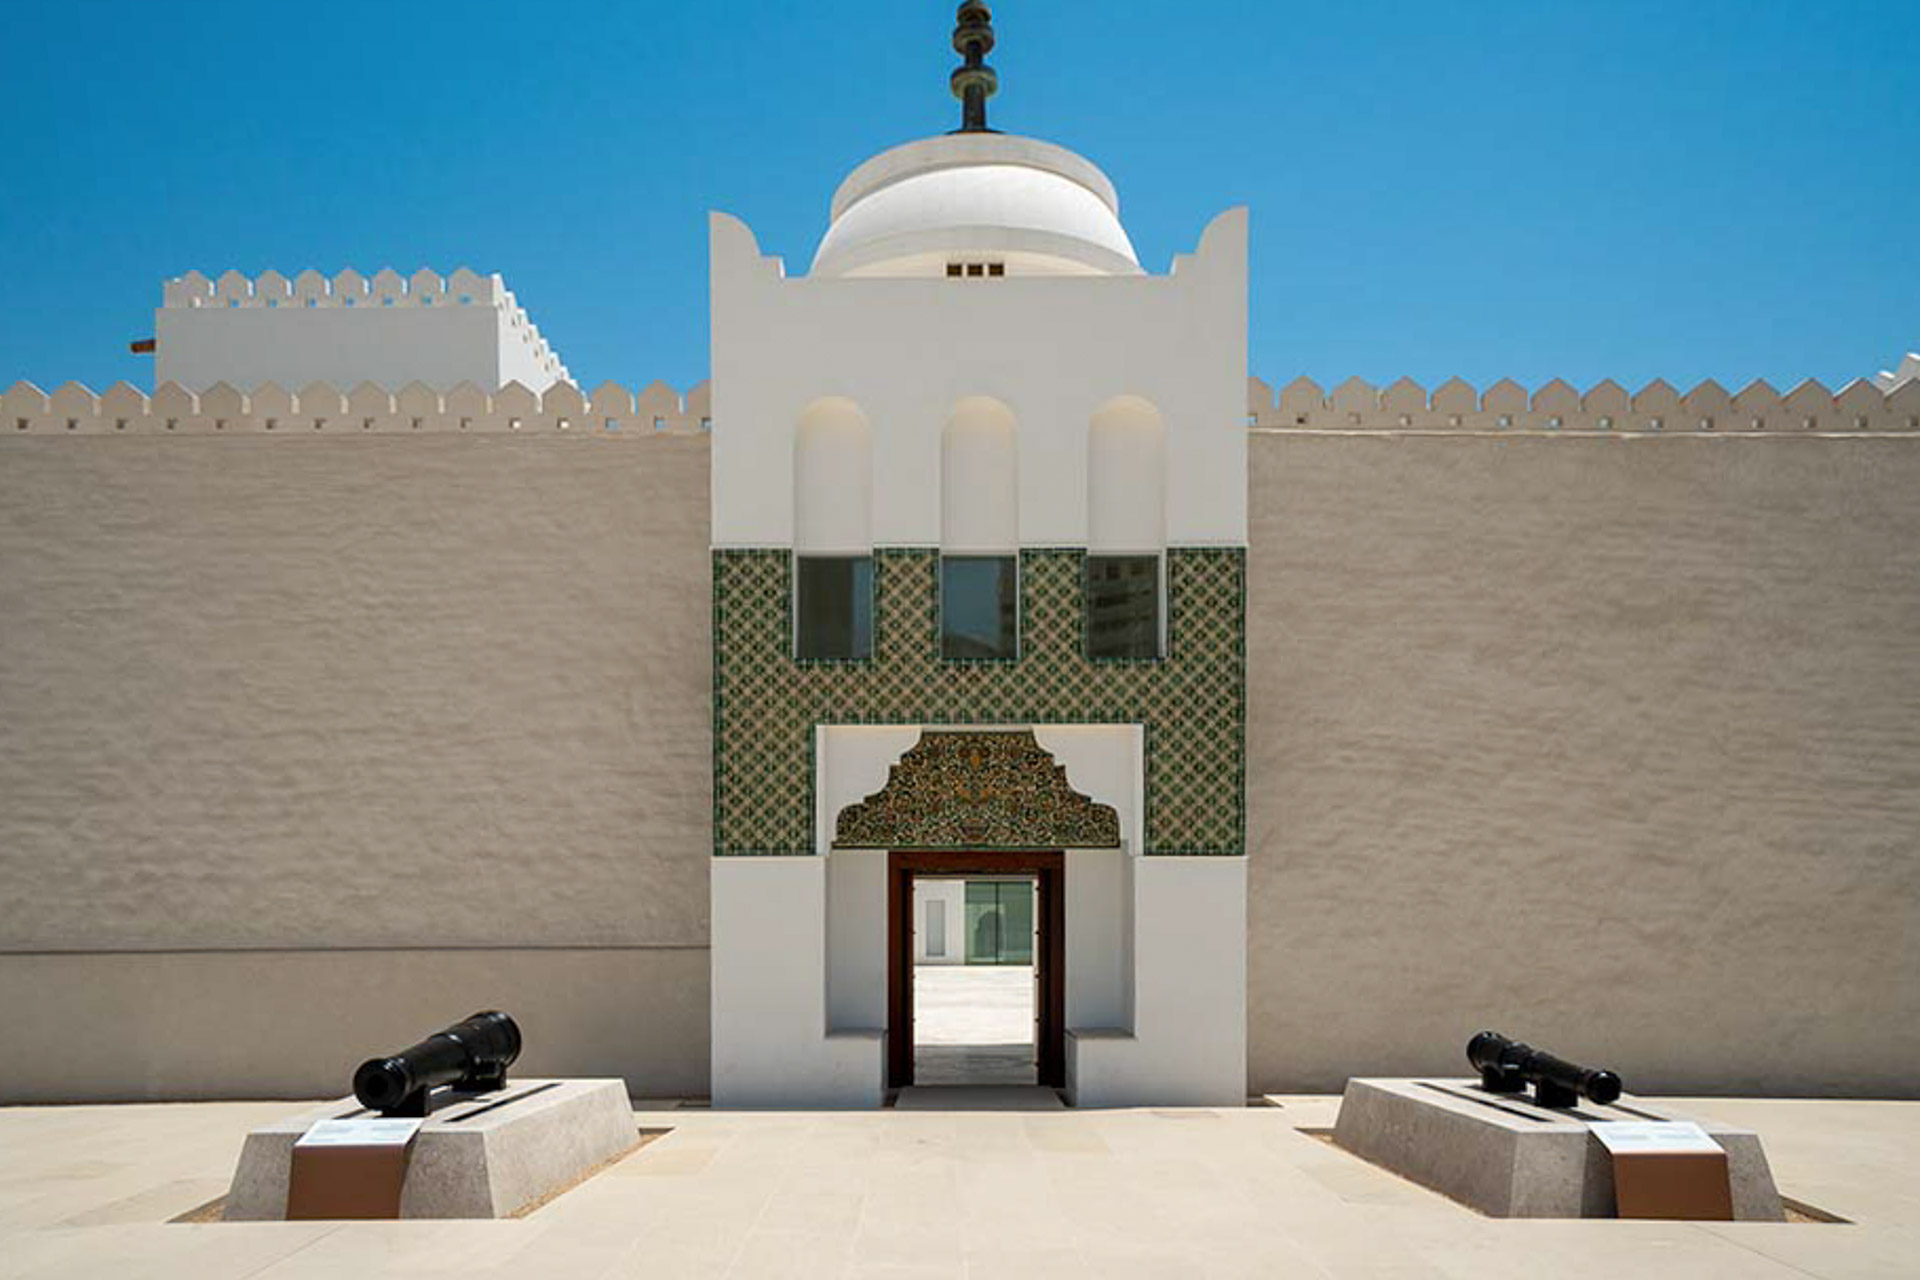 Entrance of Fort Qasr Al Hosn in Abu Dhabi